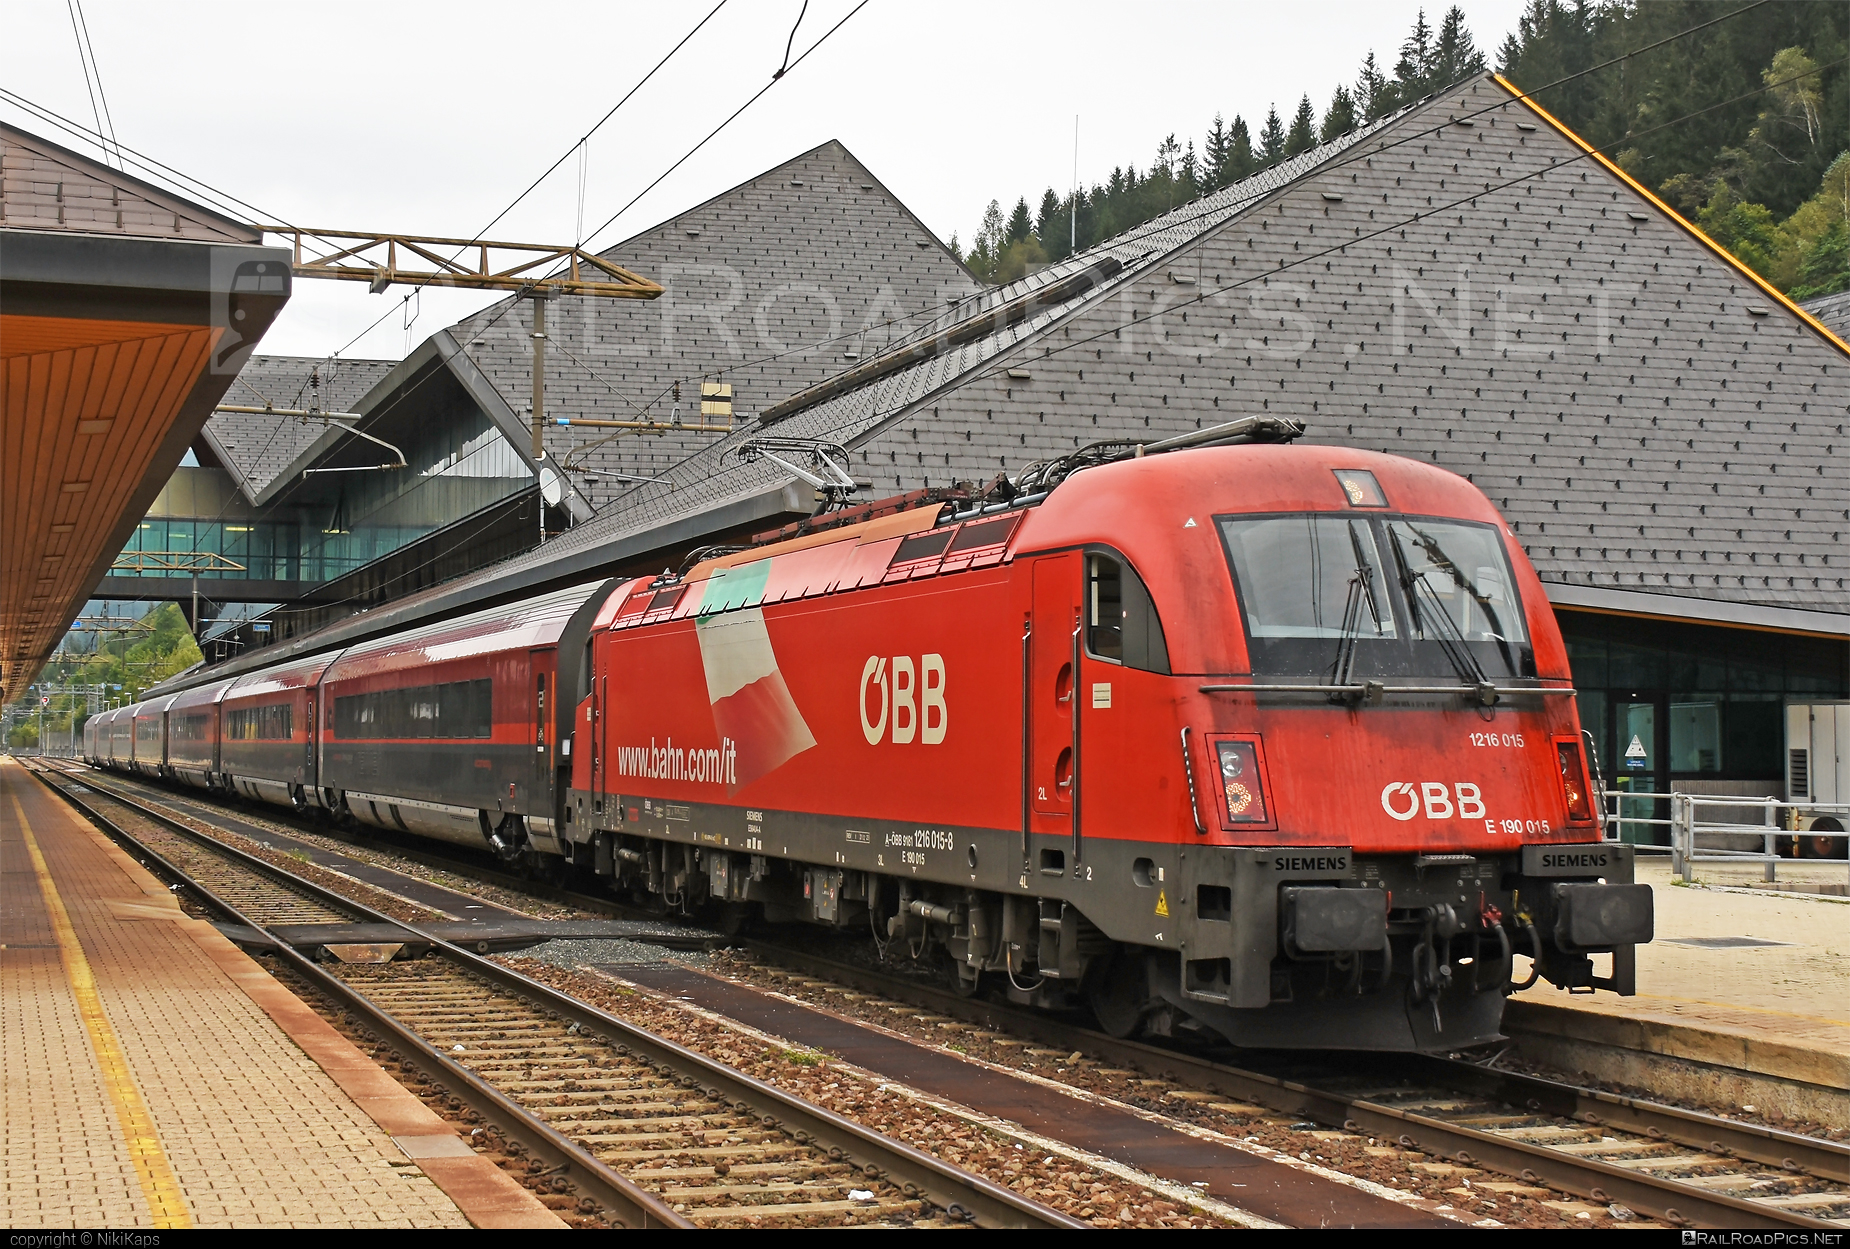 Siemens ES 64 U4 - 1216 015 operated by Österreichische Bundesbahnen #es64 #es64u4 #eurosprinter #obb #obbrailjet #osterreichischebundesbahnen #railjet #siemens #siemensEs64 #siemensEs64u4 #siemenstaurus #taurus #tauruslocomotive